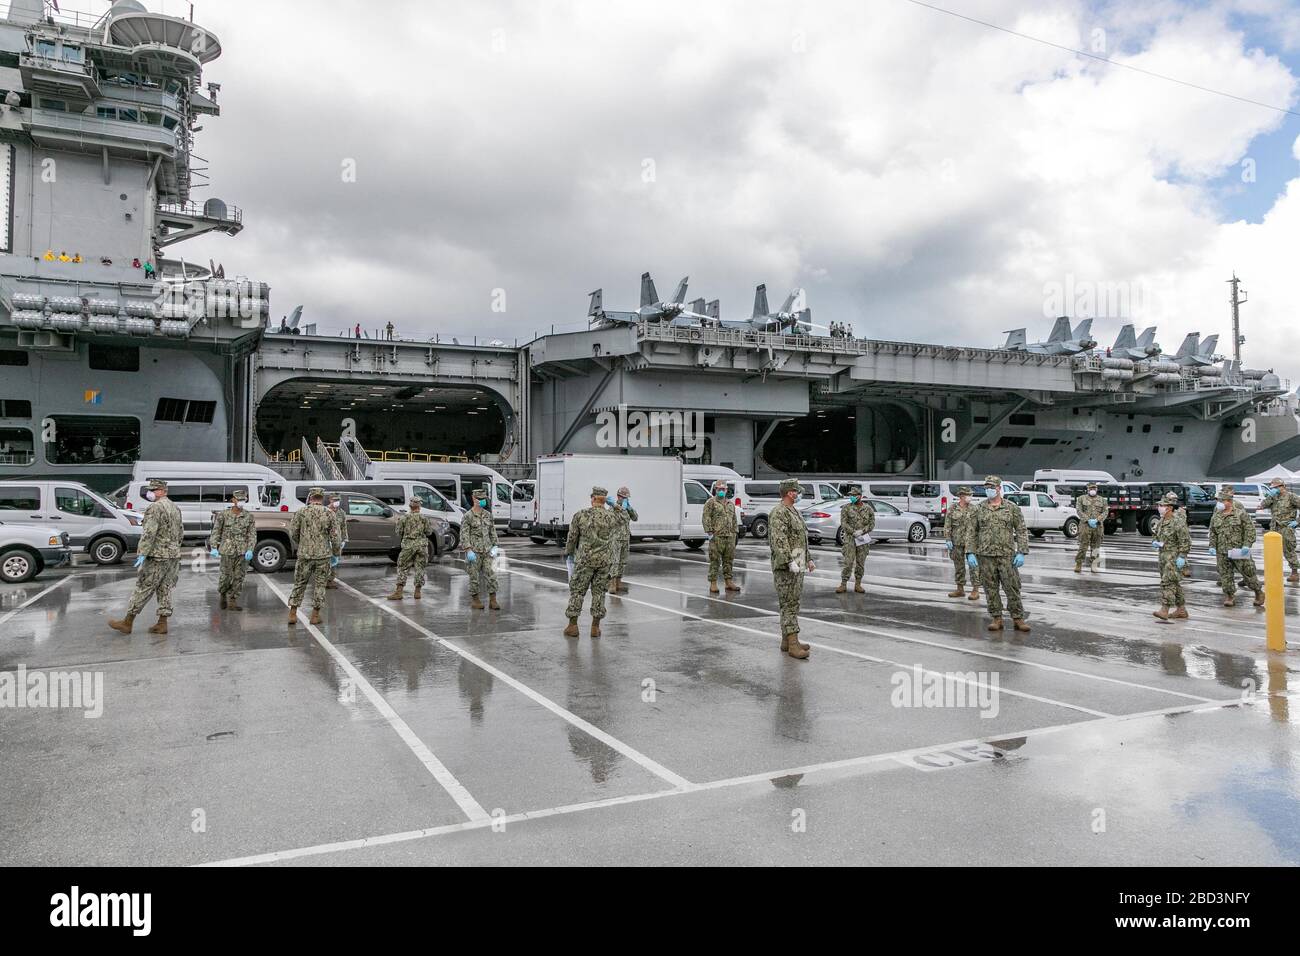 Seabees affectés au Bataillon de construction navale mobile (NMCB) 1 et NMCB 5 coordonnent le transport des marins affectés au porte-avions USS Theodore Roosevelt (CVN 71) qui ont testé négatif pour COVID-19 et sont asymptomatiques de la base navale de Guam au Gouvernement de Guam et des logements commerciaux approuvés par l'armée le 3 avril, 2020. Les marins devront rester en quarantaine dans leur logement assigné pendant au moins 14 jours, conformément à la directive DoD et au décret du gouverneur. Banque D'Images